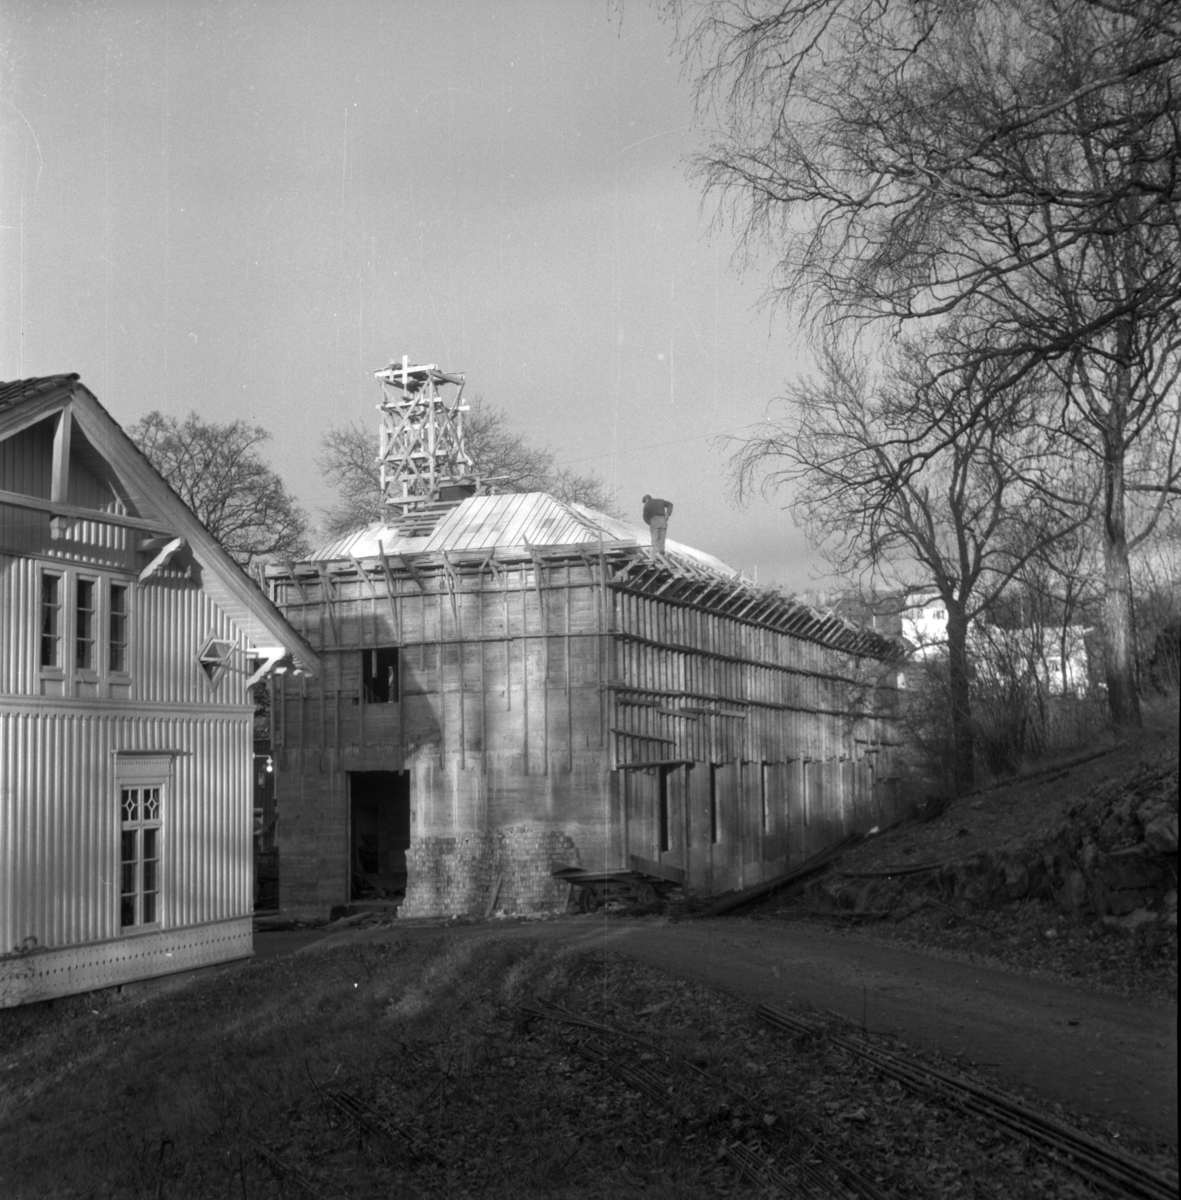 Aust-Agder-Museets første byggetrinn  - senere arkivfløy -  på Langsæ. Under oppføring. Gesims og takarbeid pågår. Mann på taket.